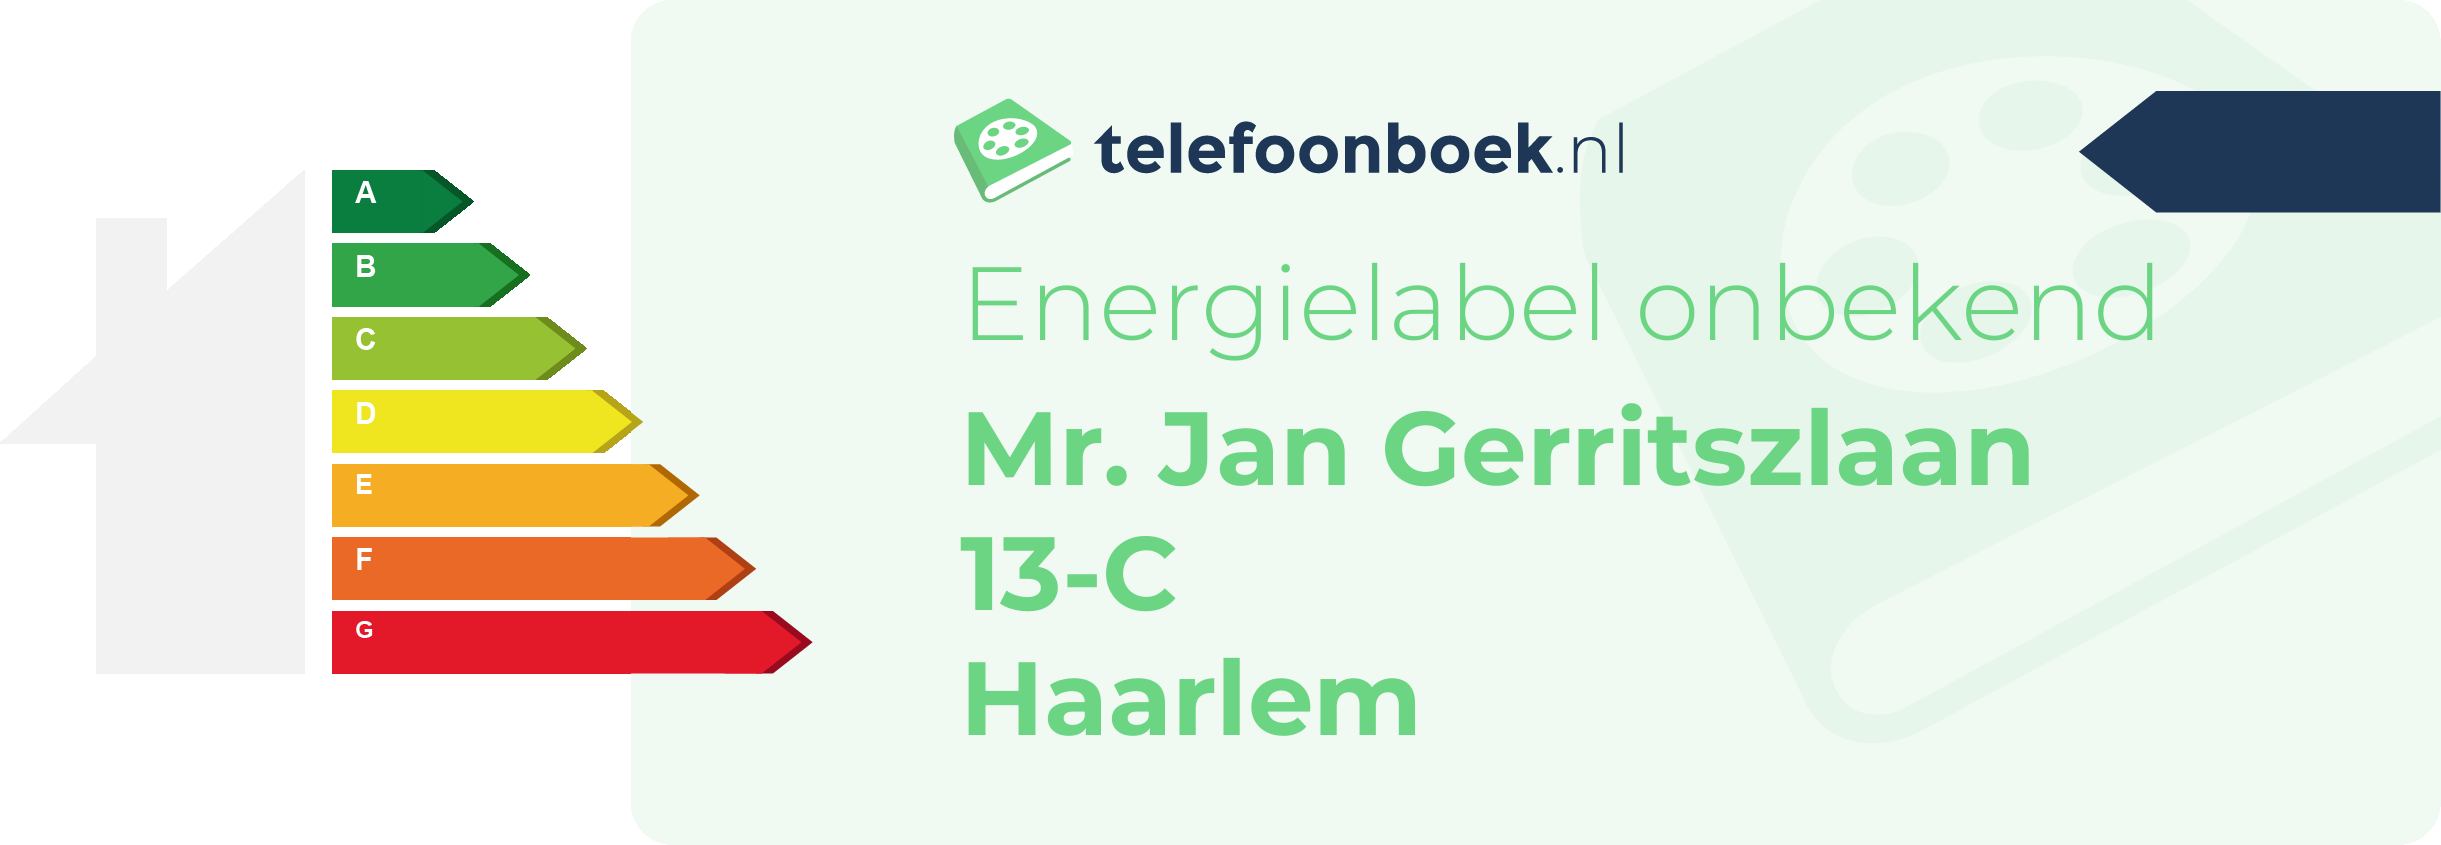 Energielabel Mr. Jan Gerritszlaan 13-C Haarlem